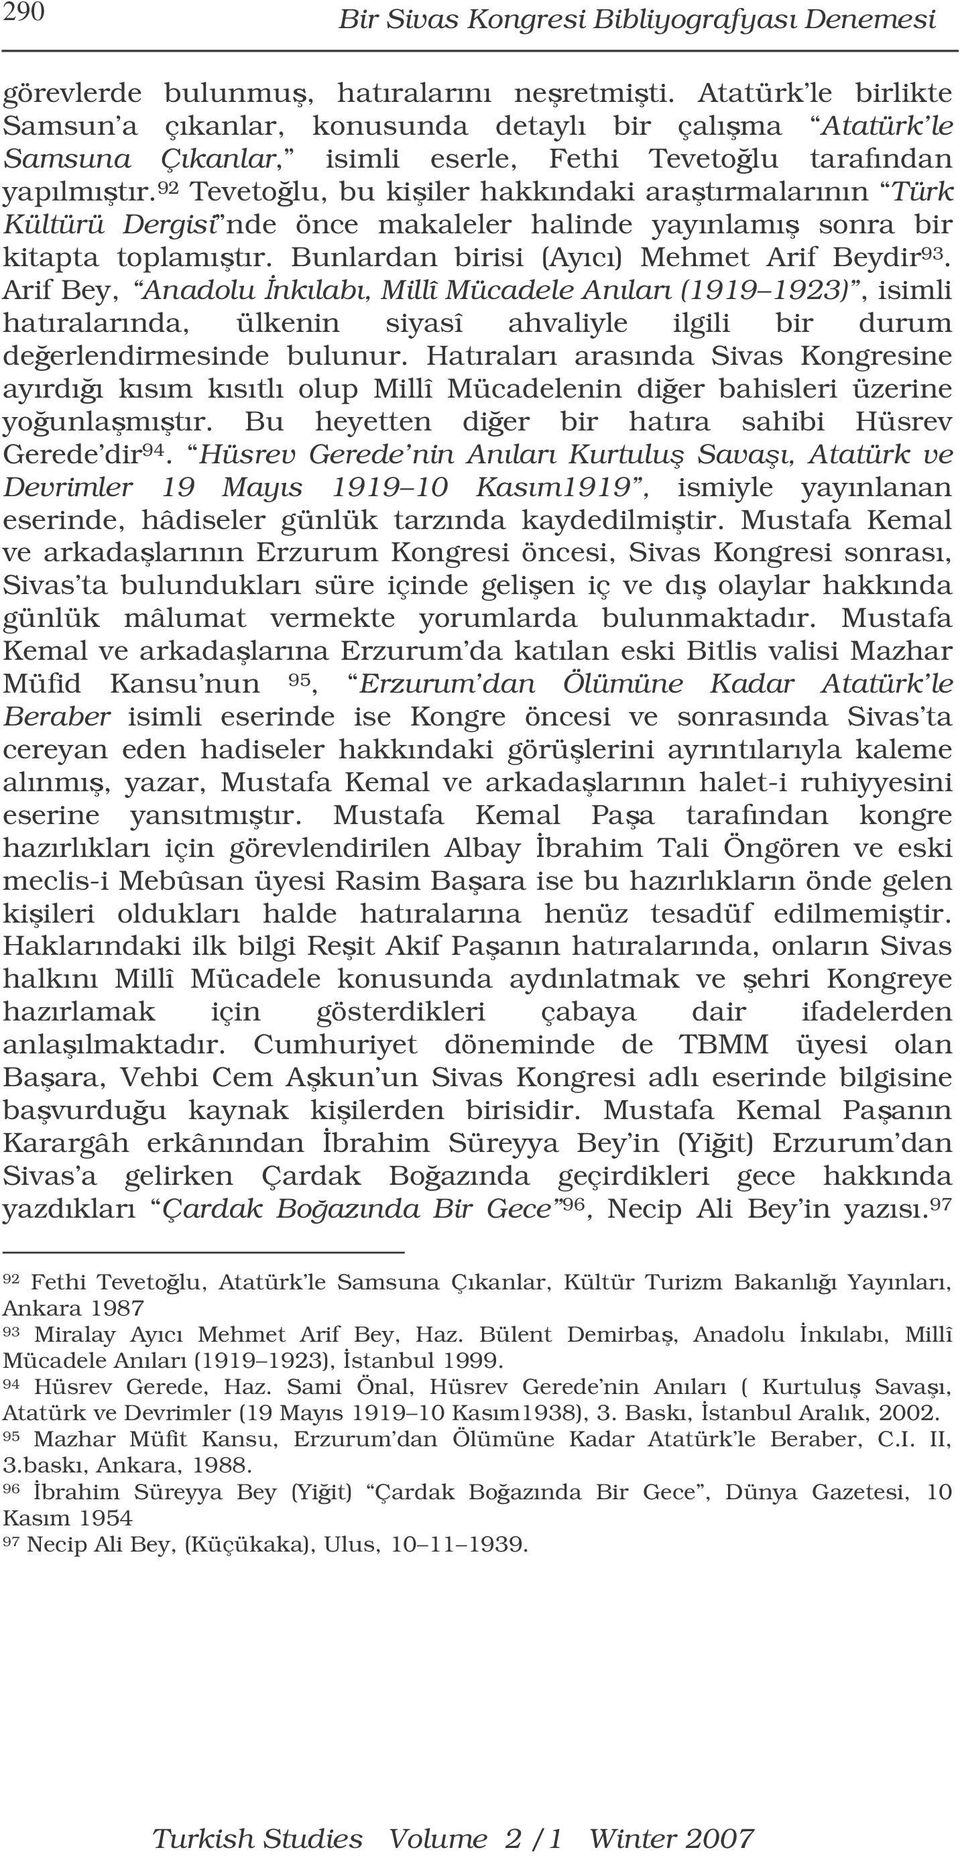 92 Tevetolu, bu kiiler hakkındaki aratırmalarının Türk Kültürü Dergisi nde önce makaleler halinde yayınlamı sonra bir kitapta toplamıtır. Bunlardan birisi (Ayıcı) Mehmet Arif Beydir 93.